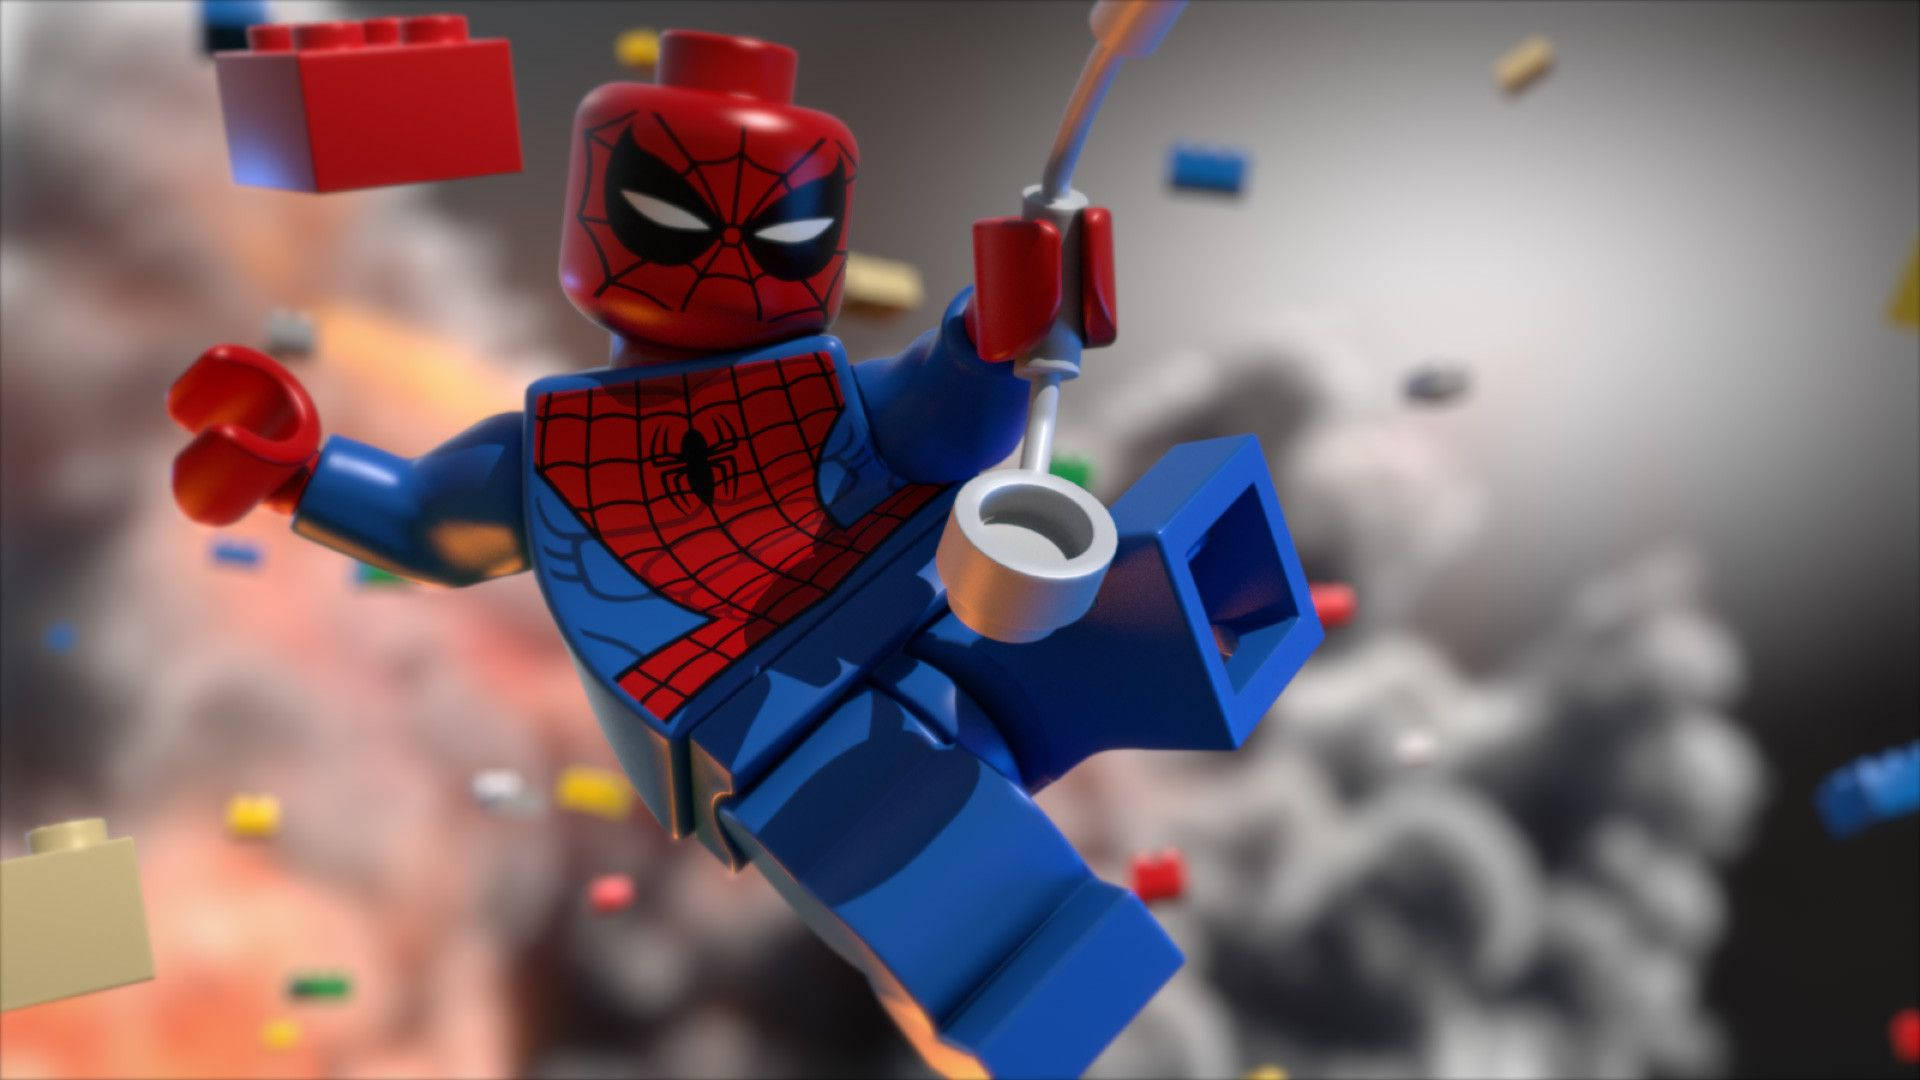 Lego Toy Spiderman Iron Spider Background